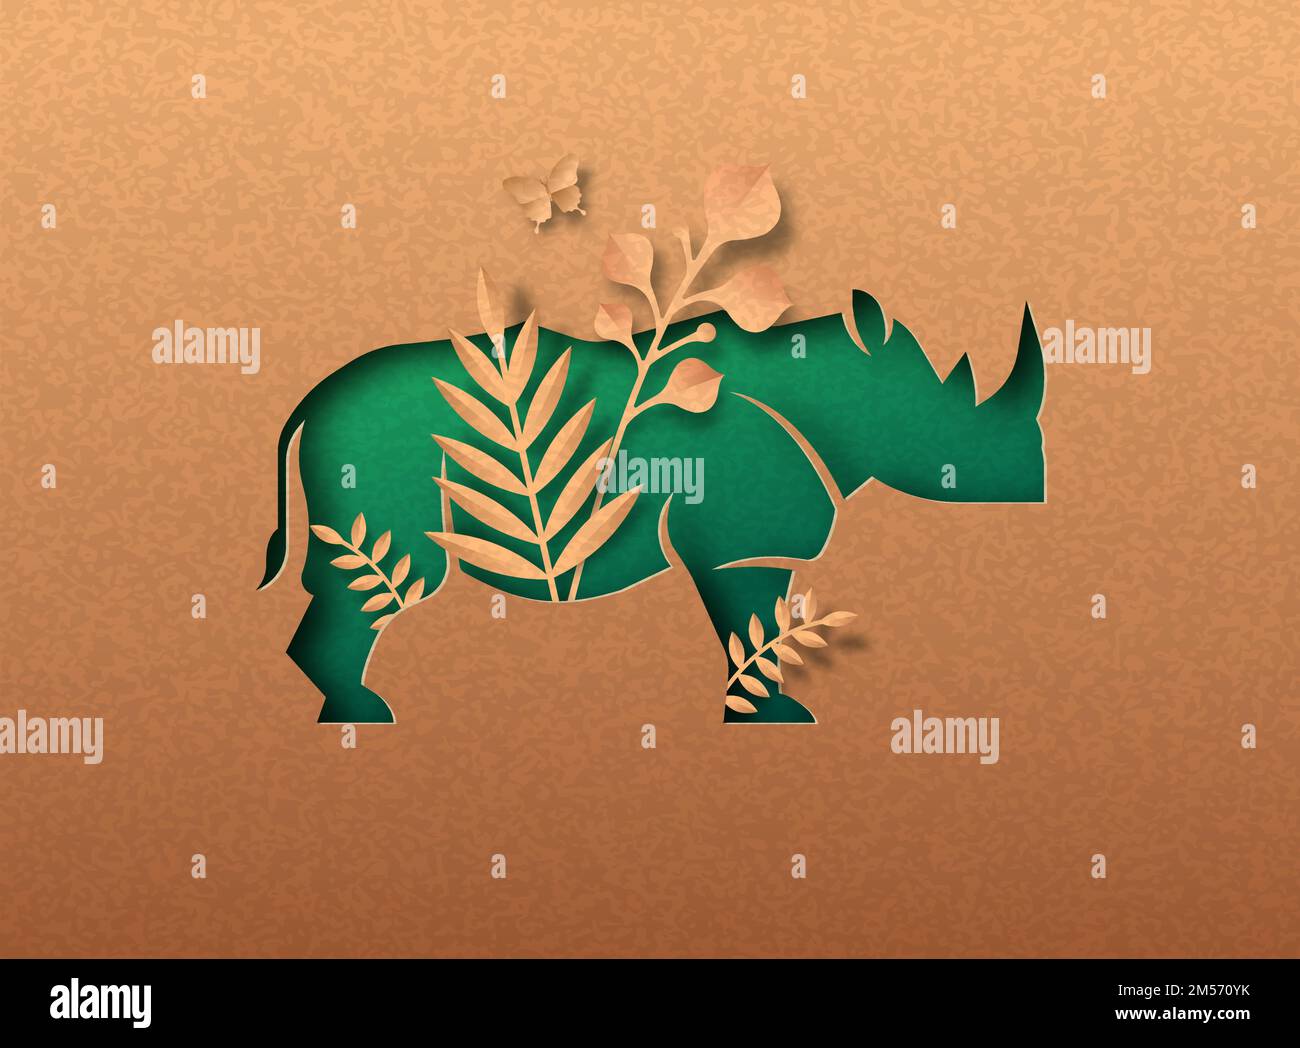 Rinoceronte verde animale papercut illustrazione con foglia di pianta tropicale. Carta riciclata texture rhino taglio concetto per la protezione della vita selvaggia, anti poa Illustrazione Vettoriale